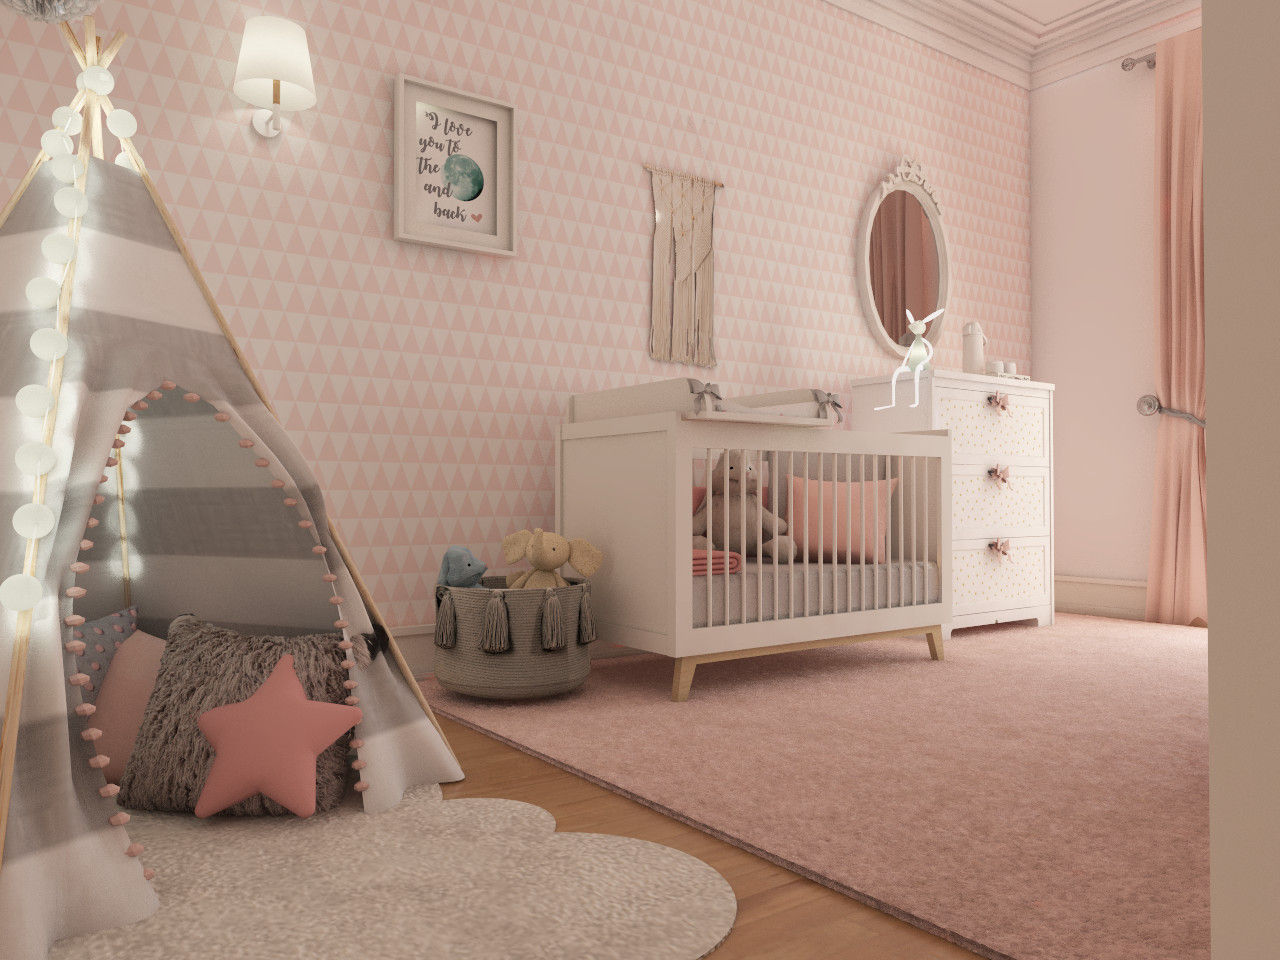 Projeto tranquilo de decoração de quarto de bebé , The Spacealist - Arquitectura e Interiores The Spacealist - Arquitectura e Interiores Kamar bayi